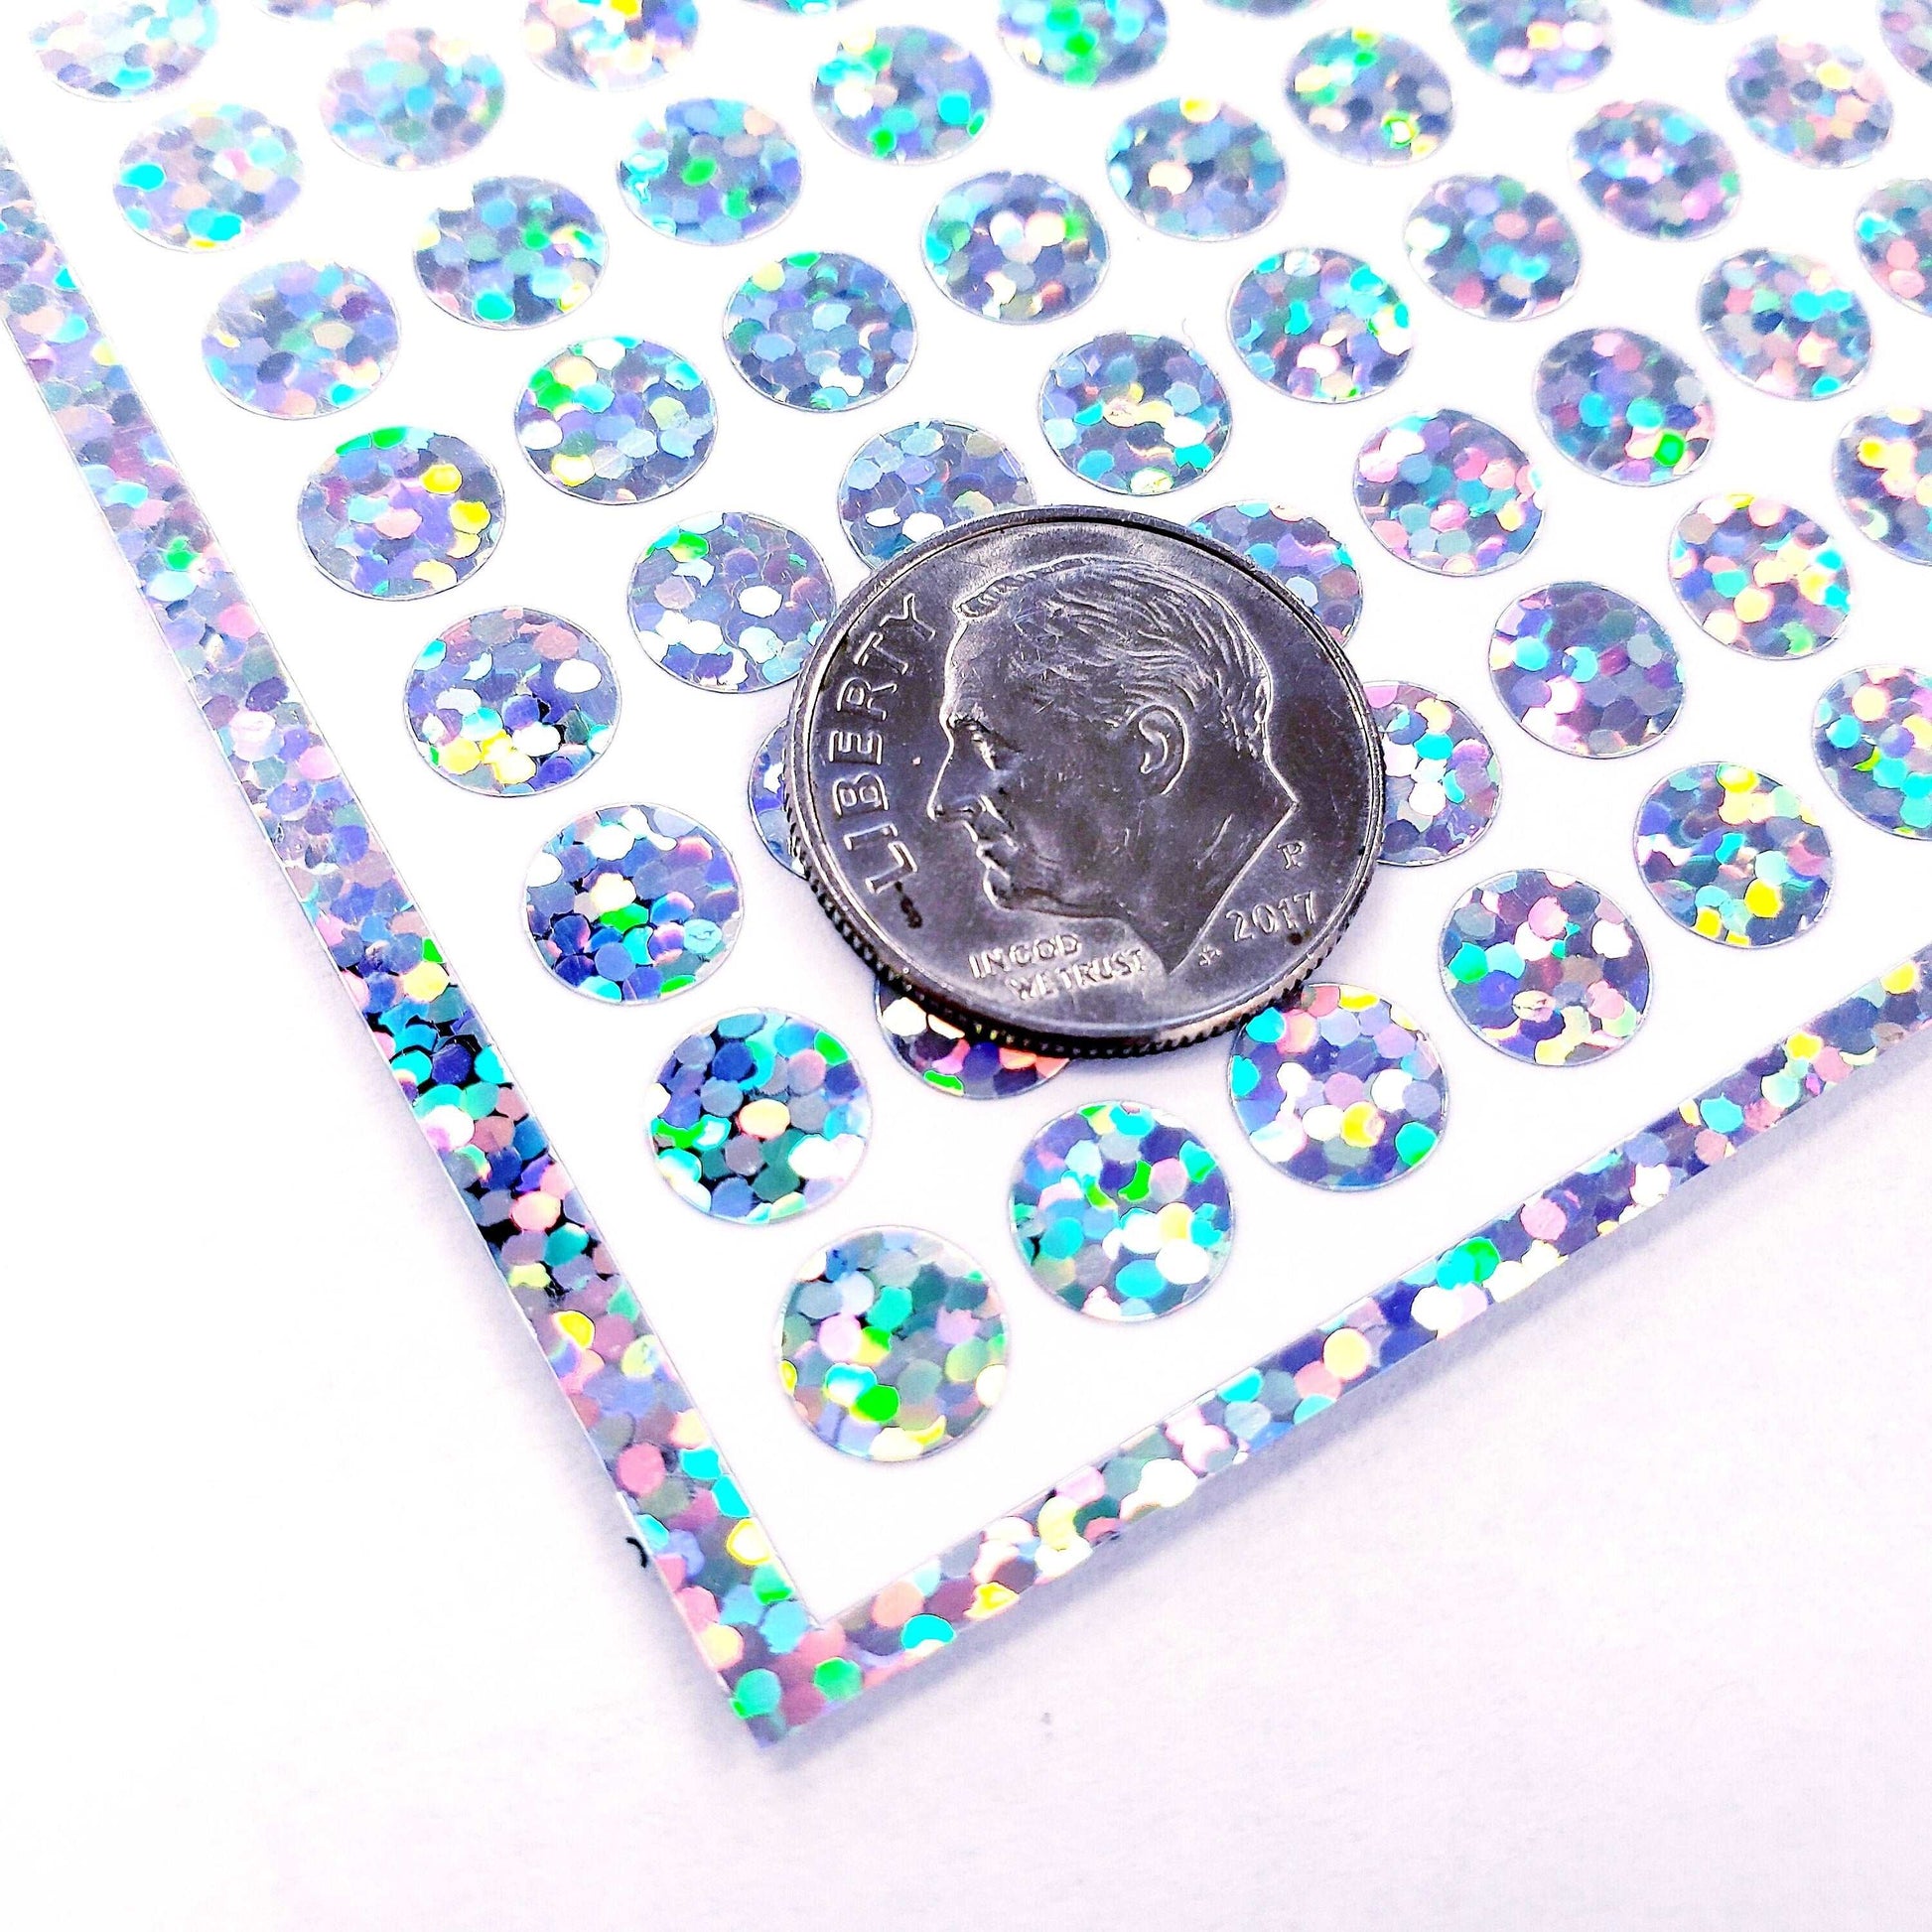 Silver Glitter Dots Sticker Sheet